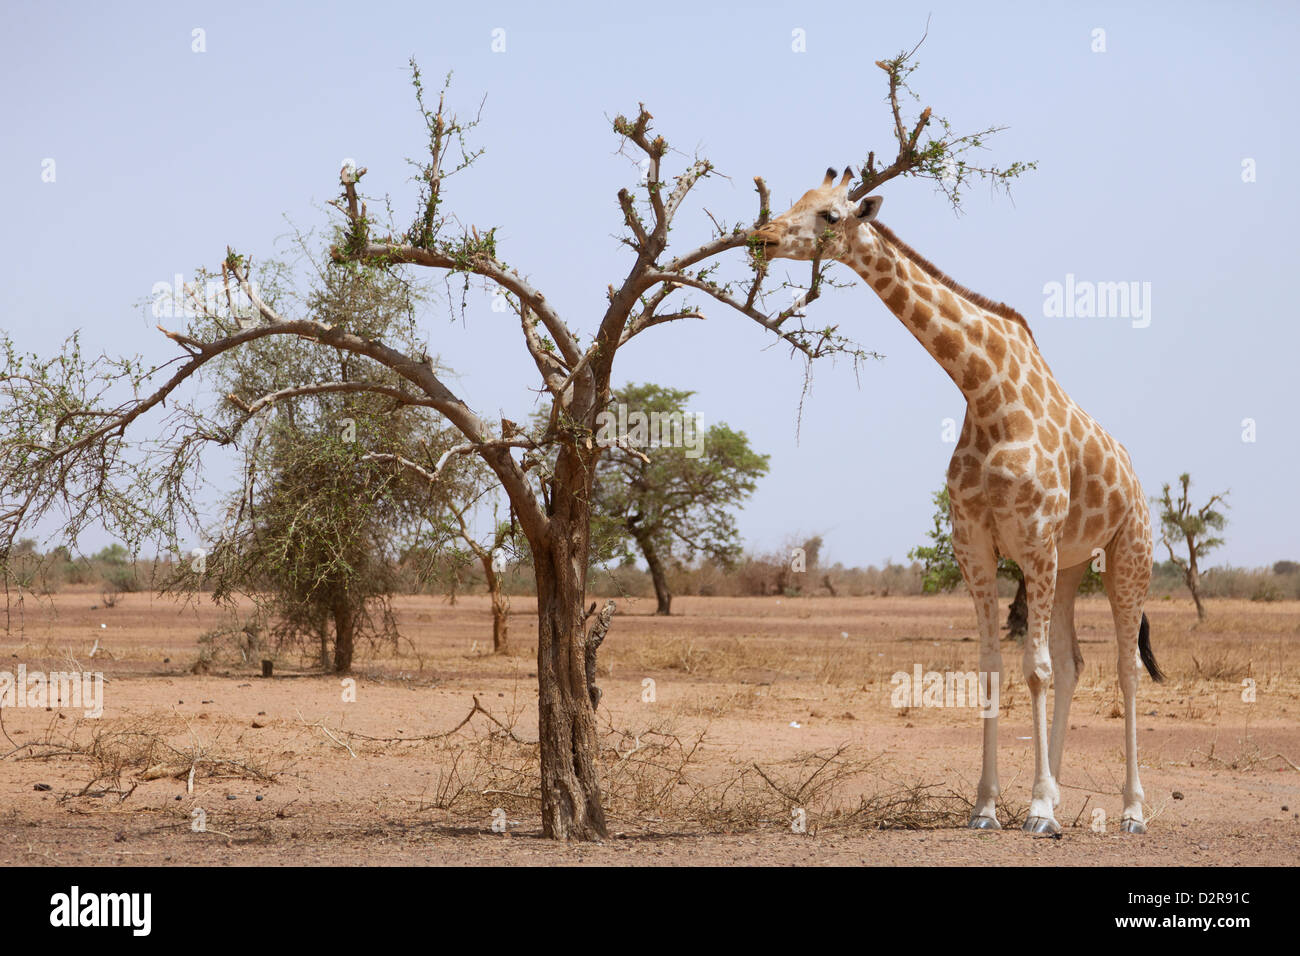 Girafe dans le parc de Koure, 60 km à l'est de Niamey, l'une des dernières girafes d'Afrique de l'Ouest, au Niger, en Afrique de l'Ouest Banque D'Images